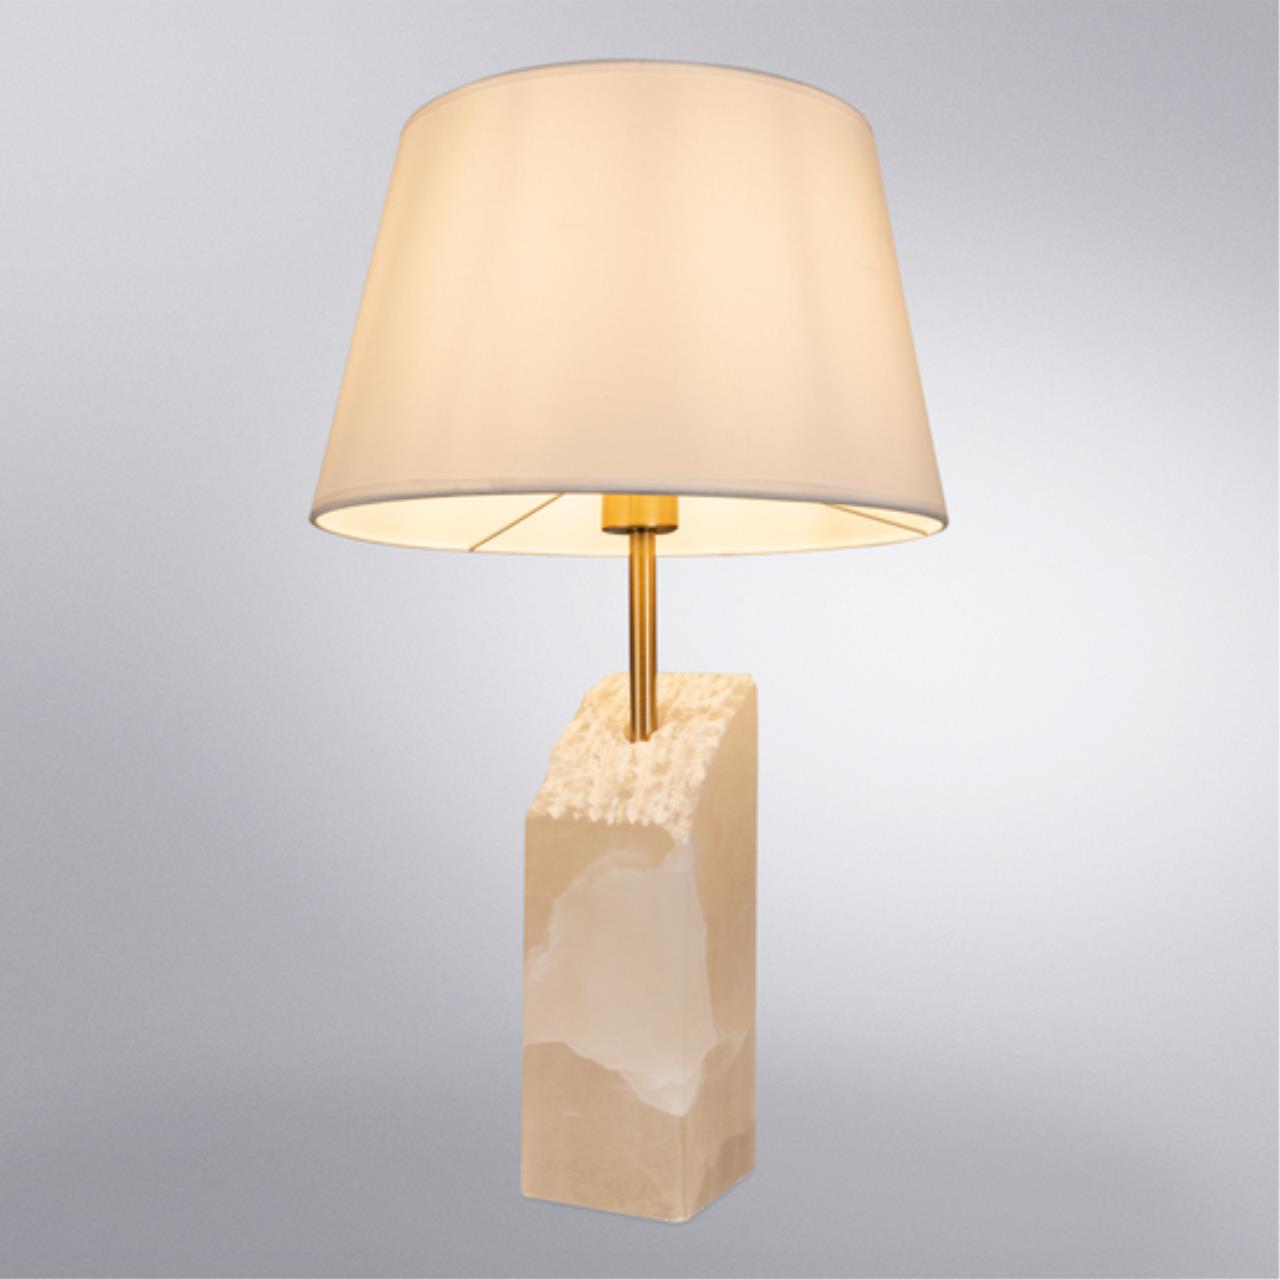 Интерьерная настольная лампа Arte lamp A4028LT-1PB